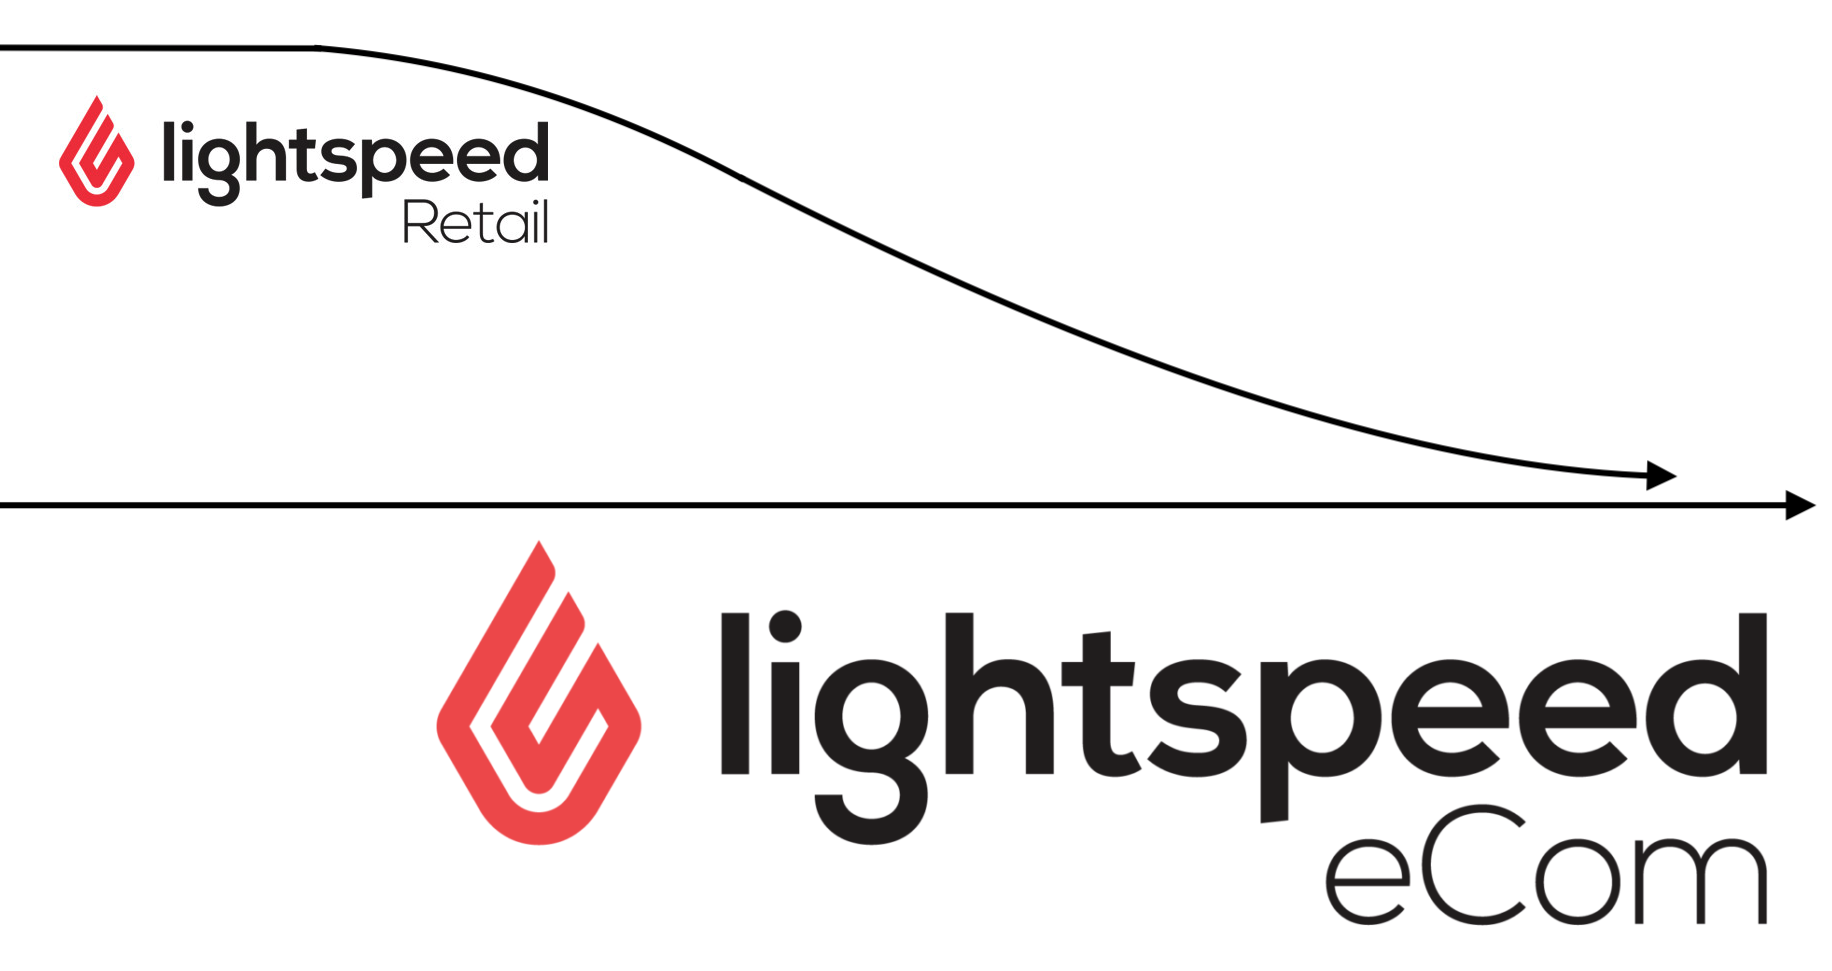 Zowel het Lightspeed Retail-logo als het eCom-logo worden weergegeven als pijlen. De Retail-pijl wordt samengevoegd met de eCom-pijl.